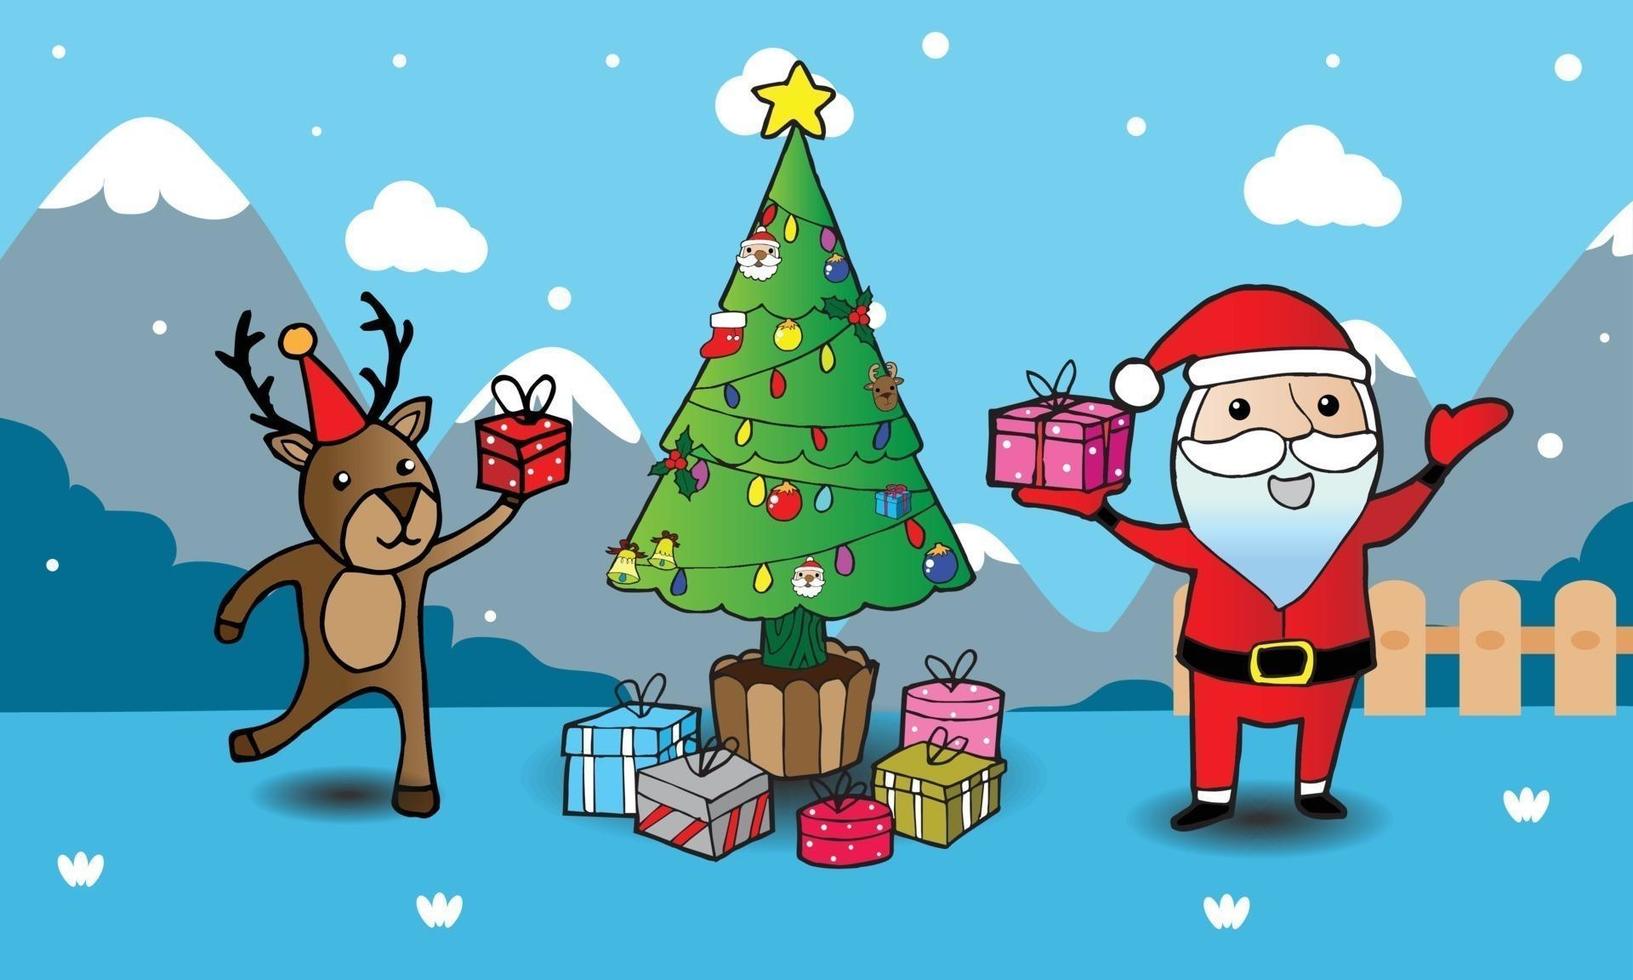 cartão de felicitações, cartão de natal com papai noel, veado e árvore de natal vetor